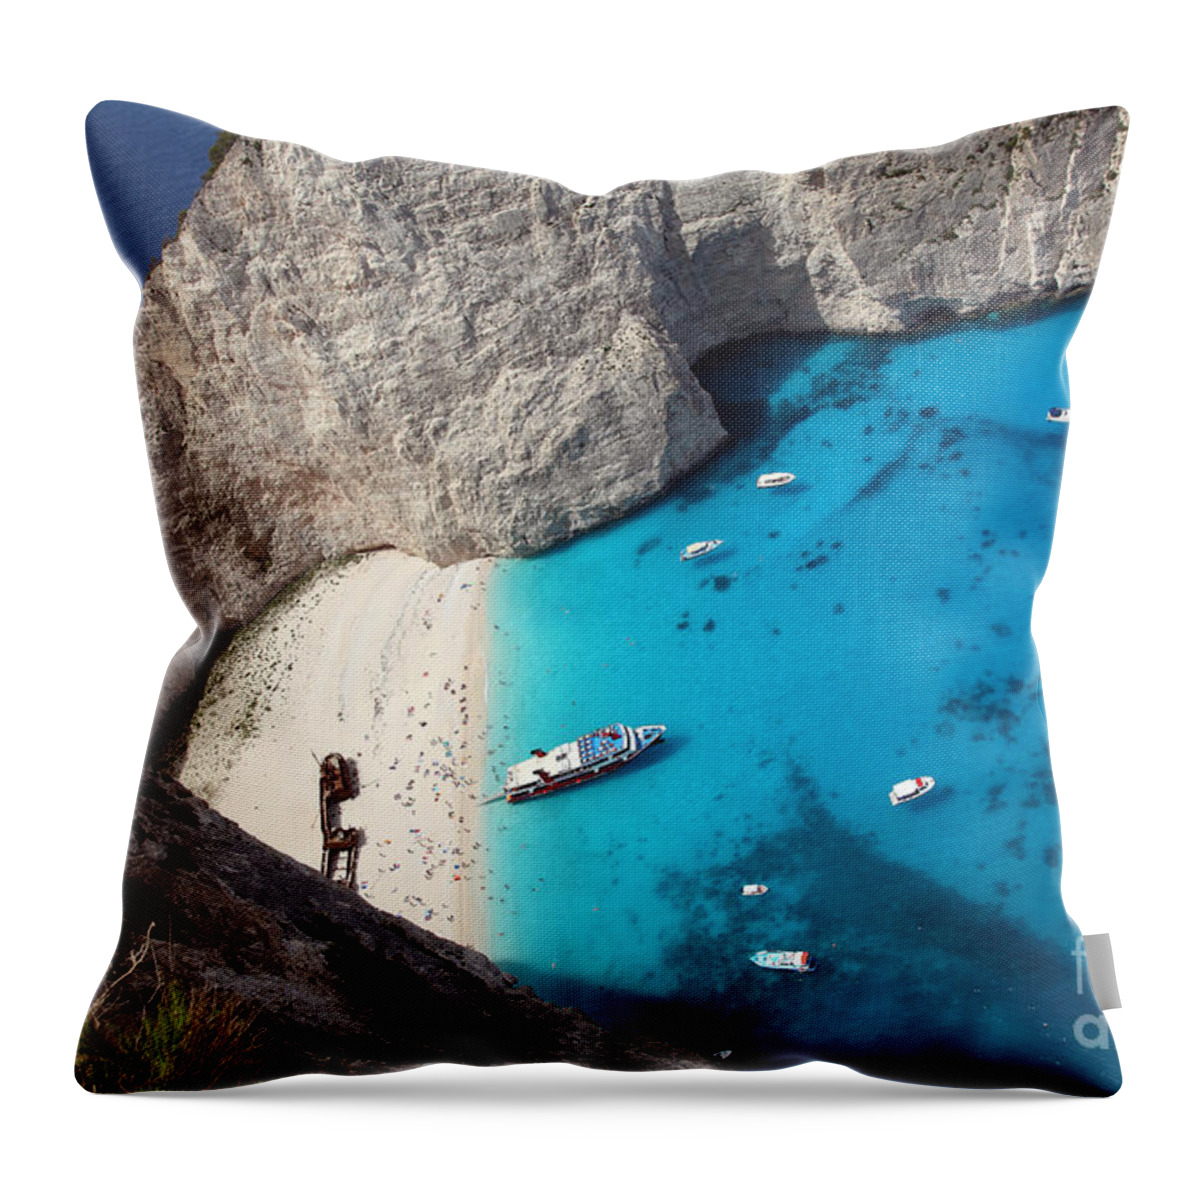 Greece Throw Pillow featuring the photograph Greece by Milena Boeva